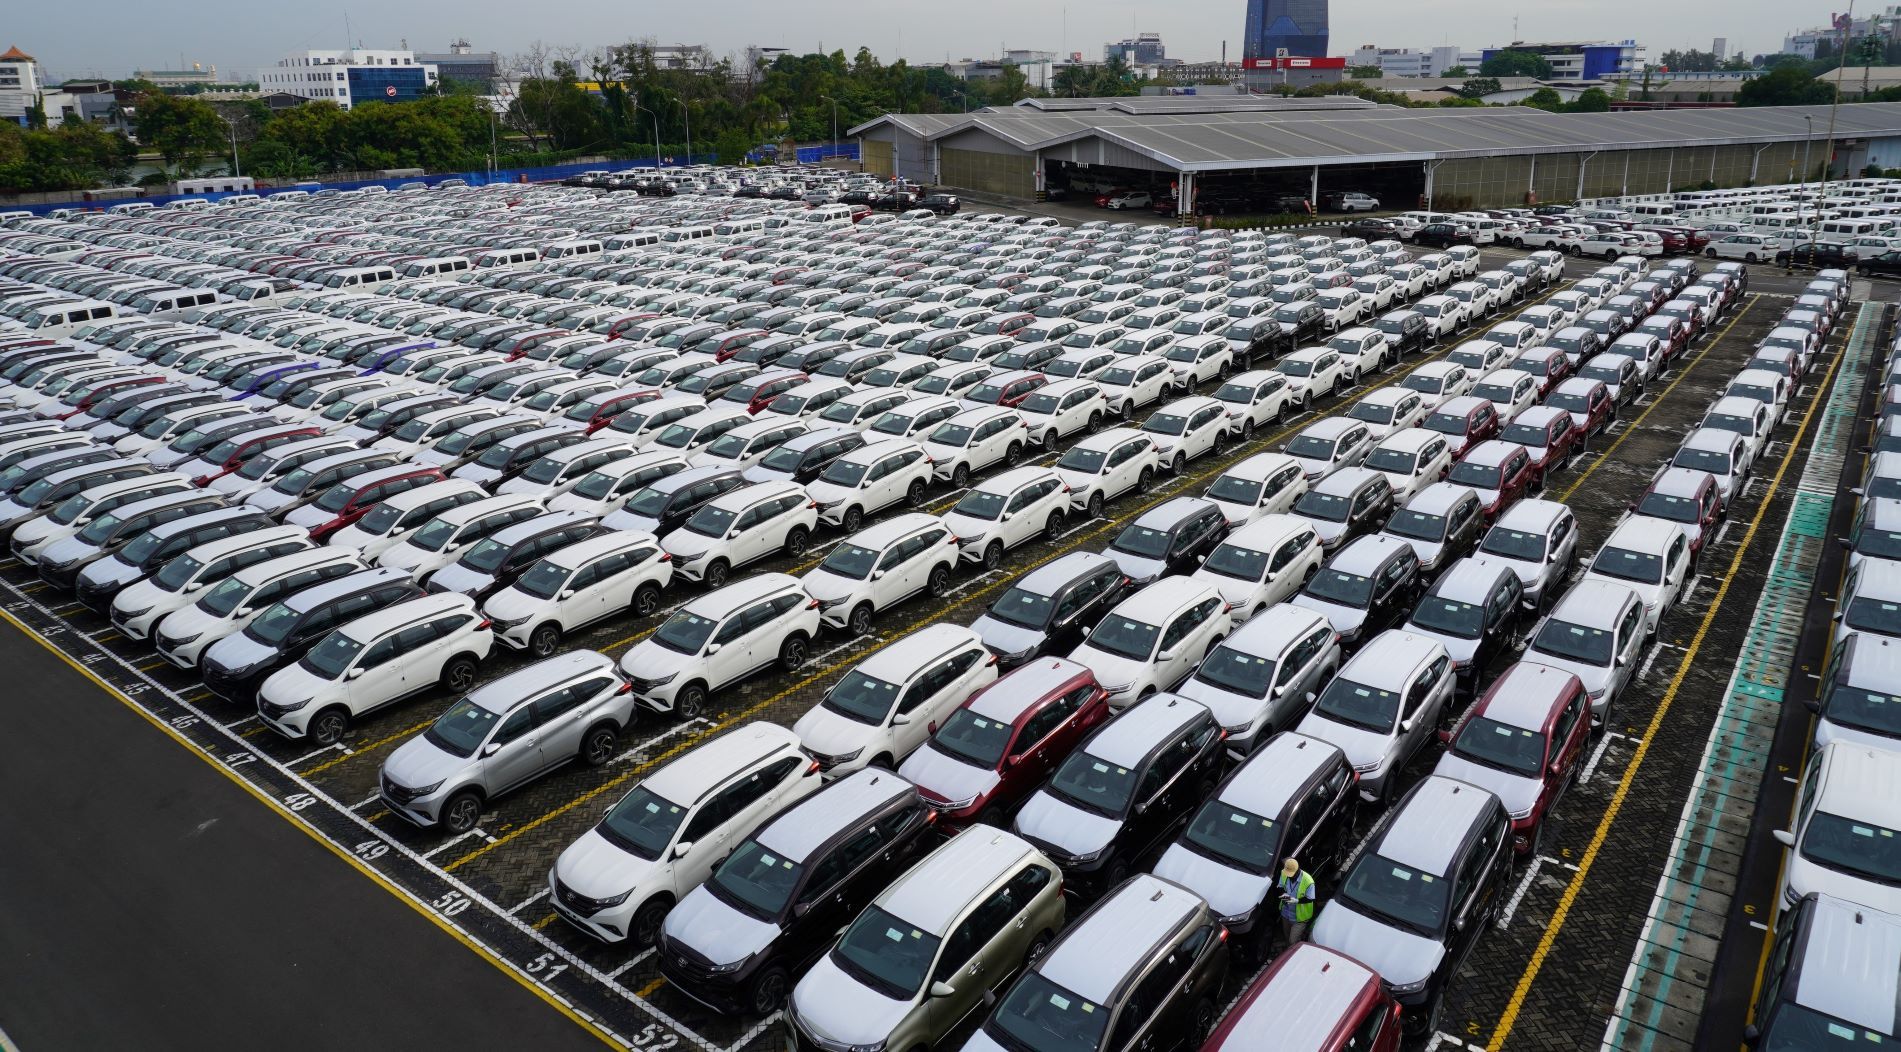 Hingga Oktober 2021, Penjualan Daihatsu Capai 118 Ribu Unit